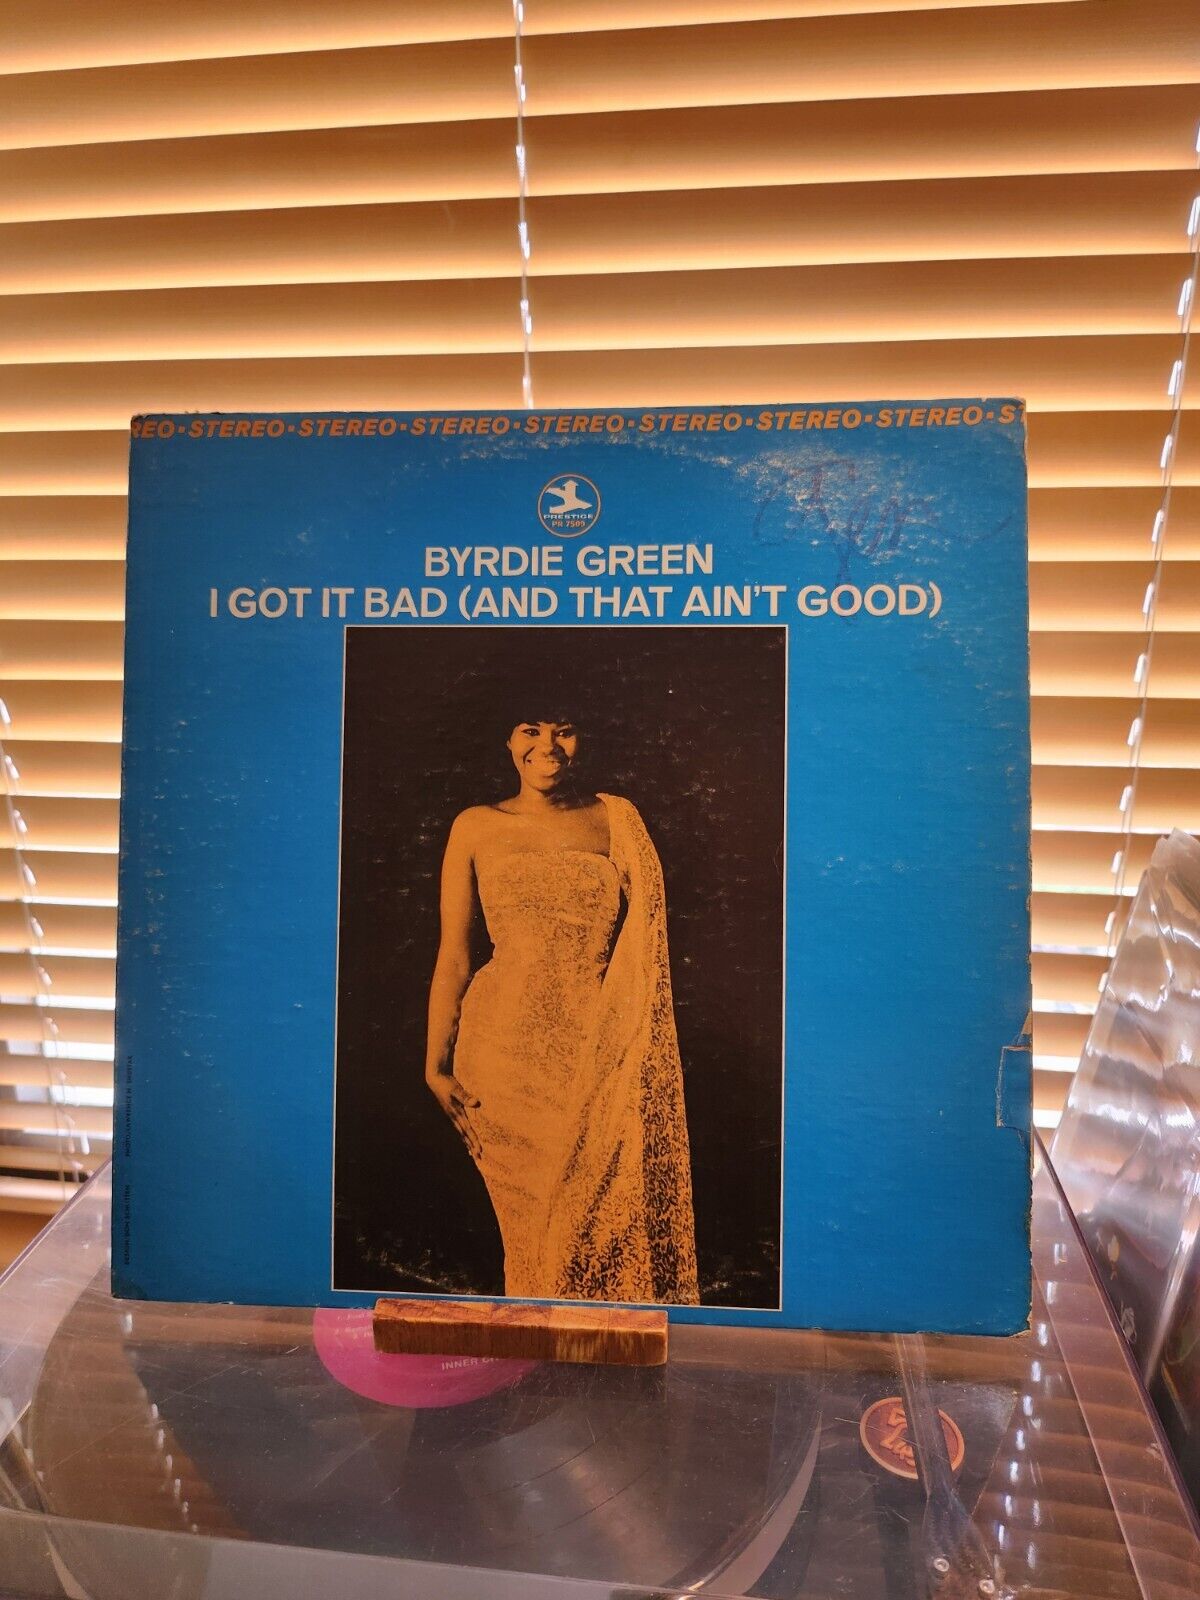 Byrdie Green, I Got It Bad (And That Ain't Good) 1967 1st Prestige, Van Gelder 